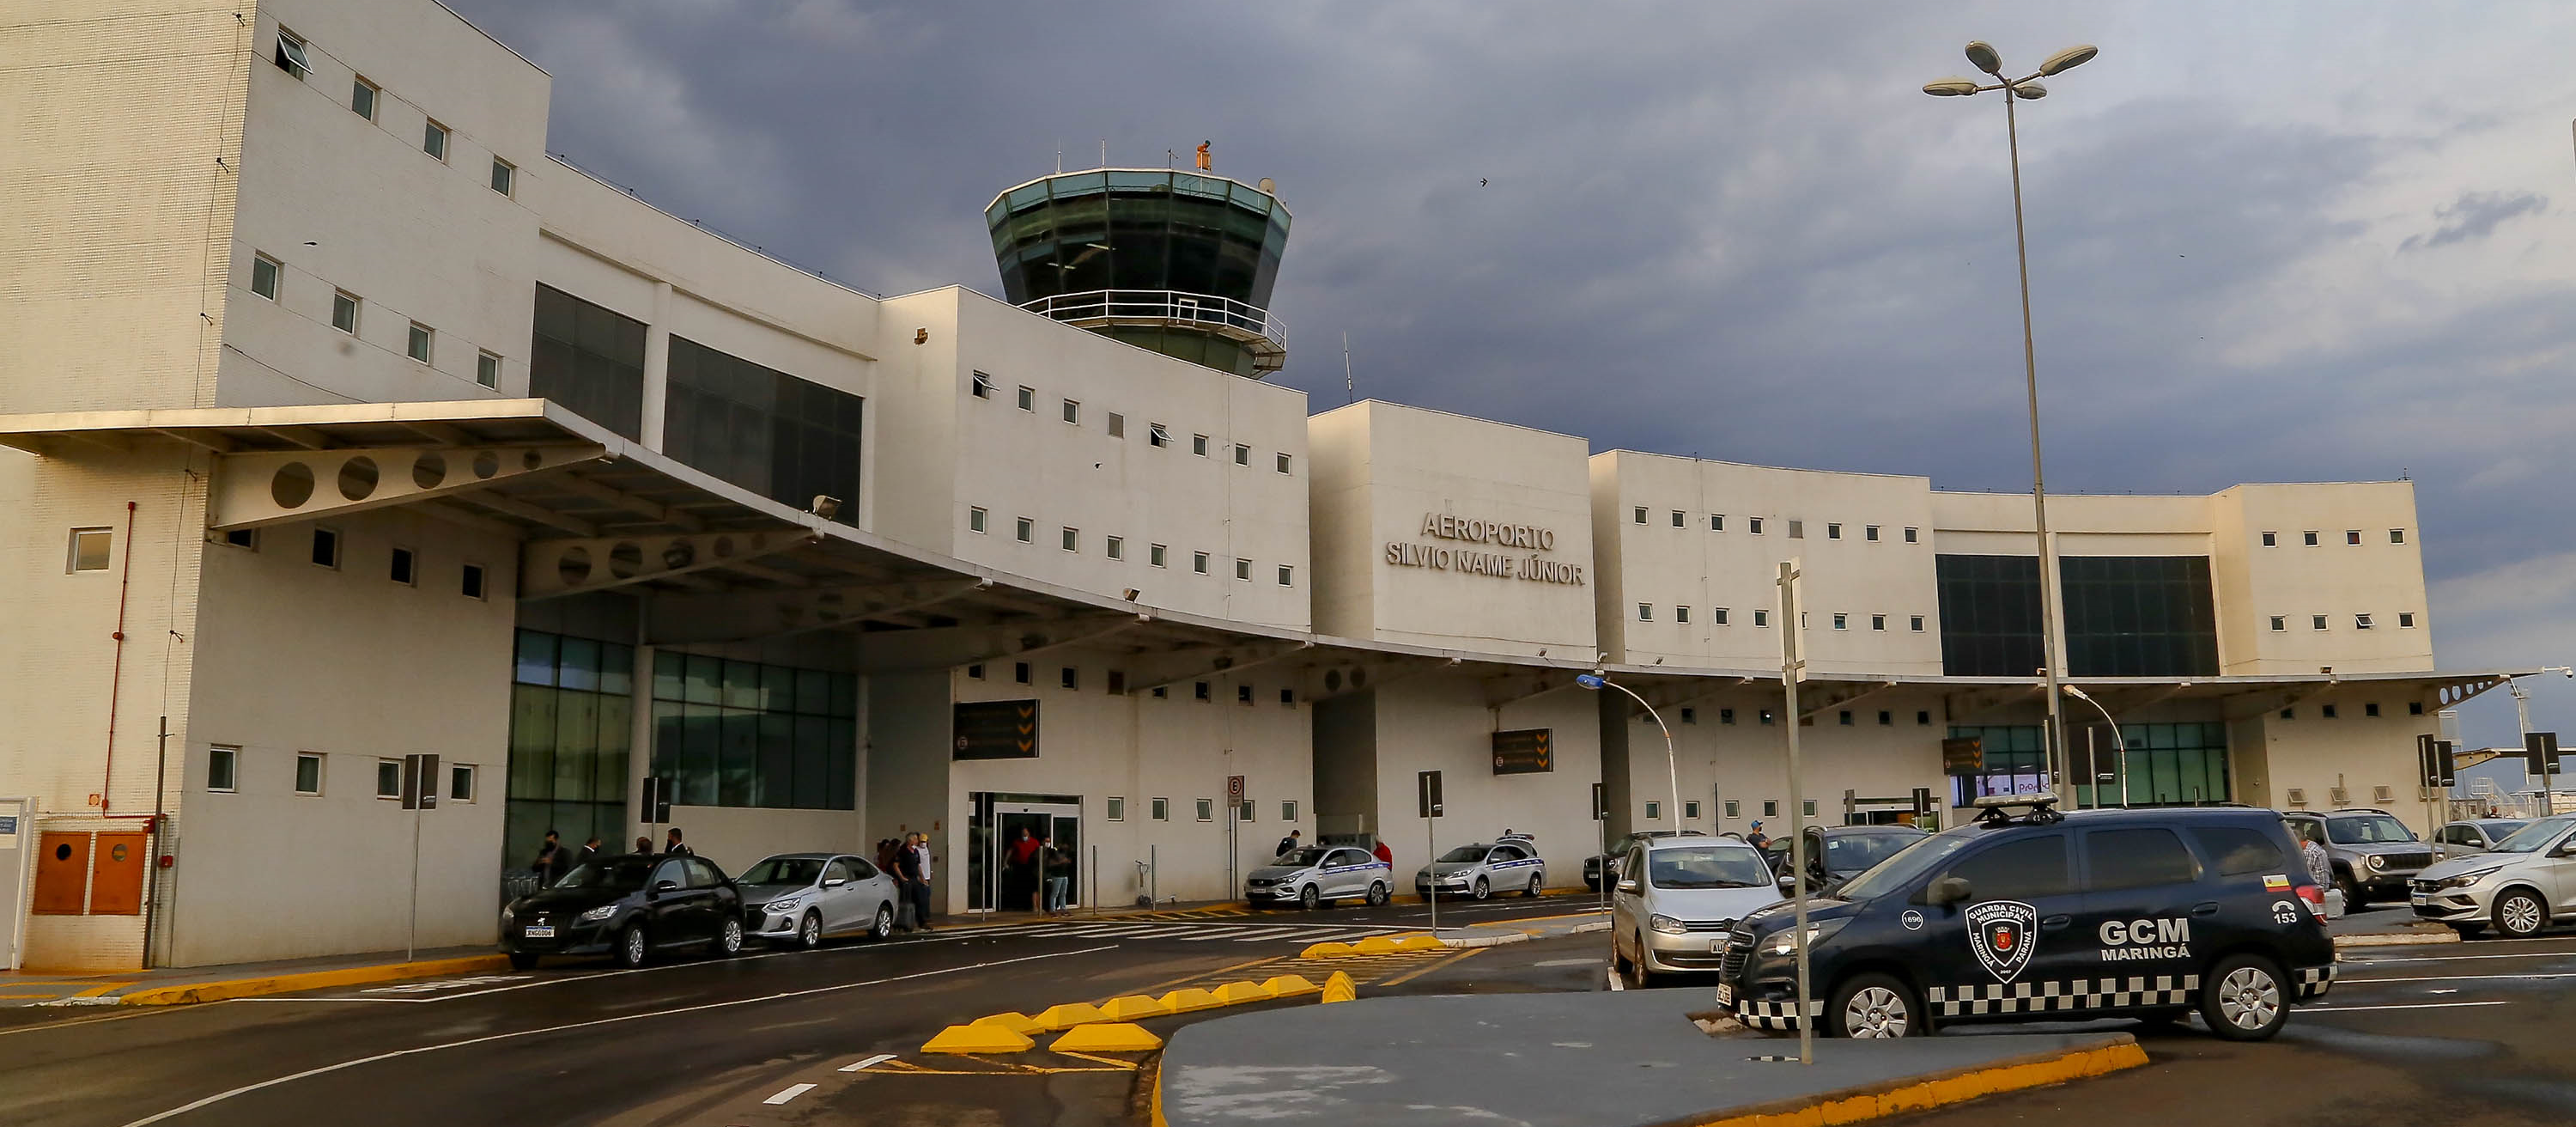 Aeroporto terá posto da Guarda Municipal